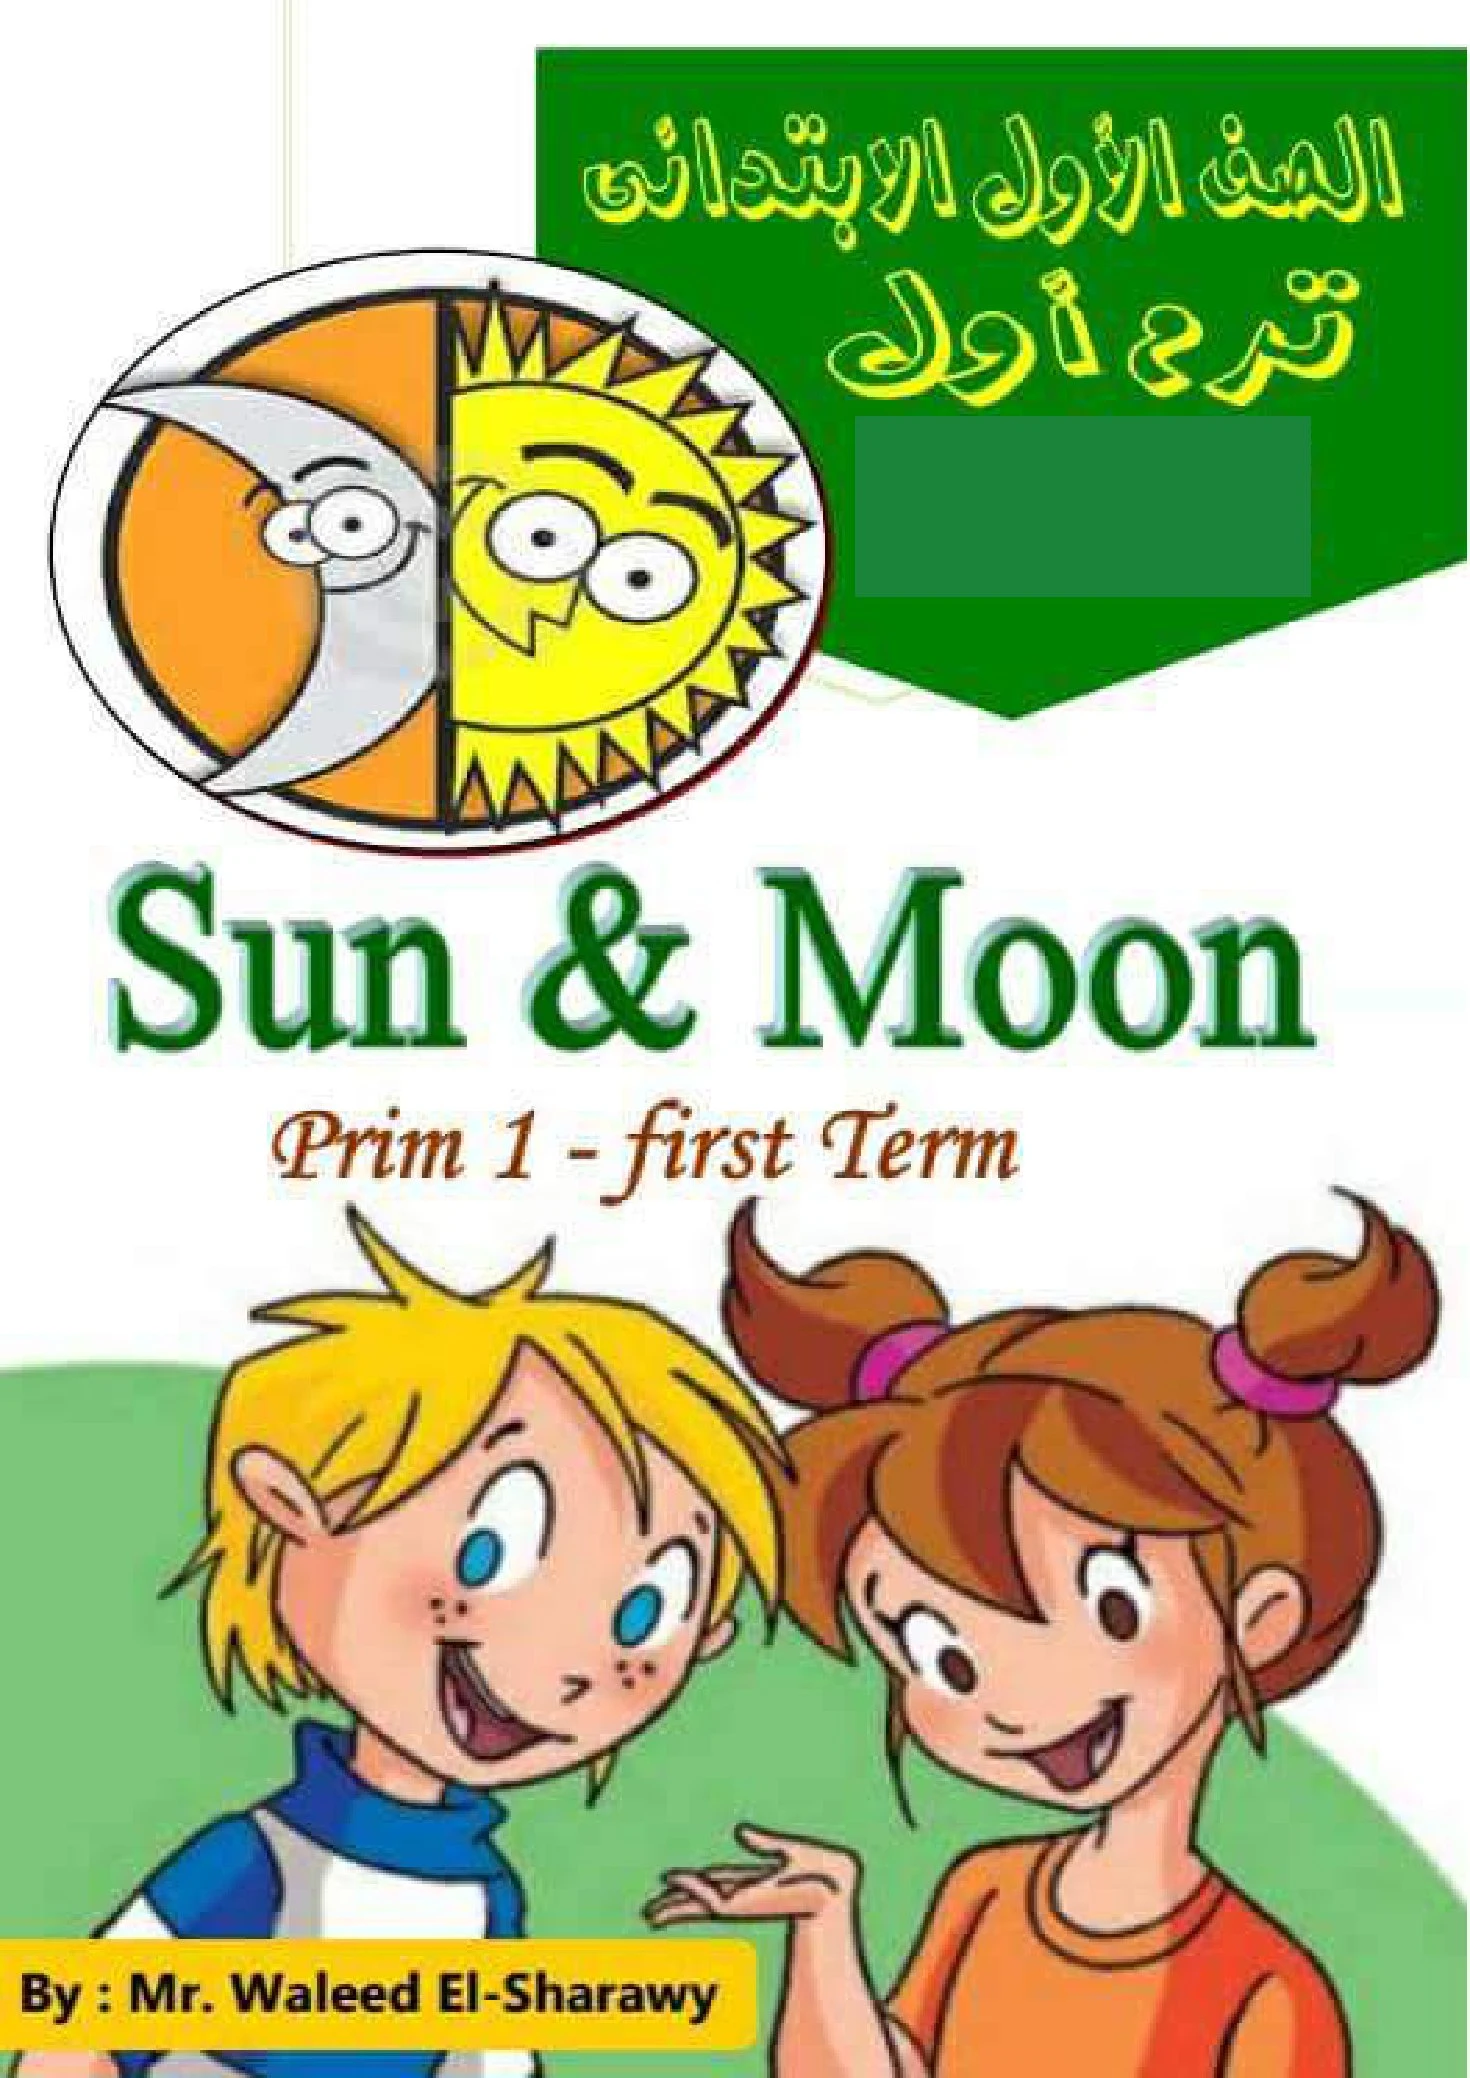 مذكرةSun& Moon في اللغة الانجليزية أولى إبتدائي الفصل الدراسي الأول pdf تحميل مباشر مجاني